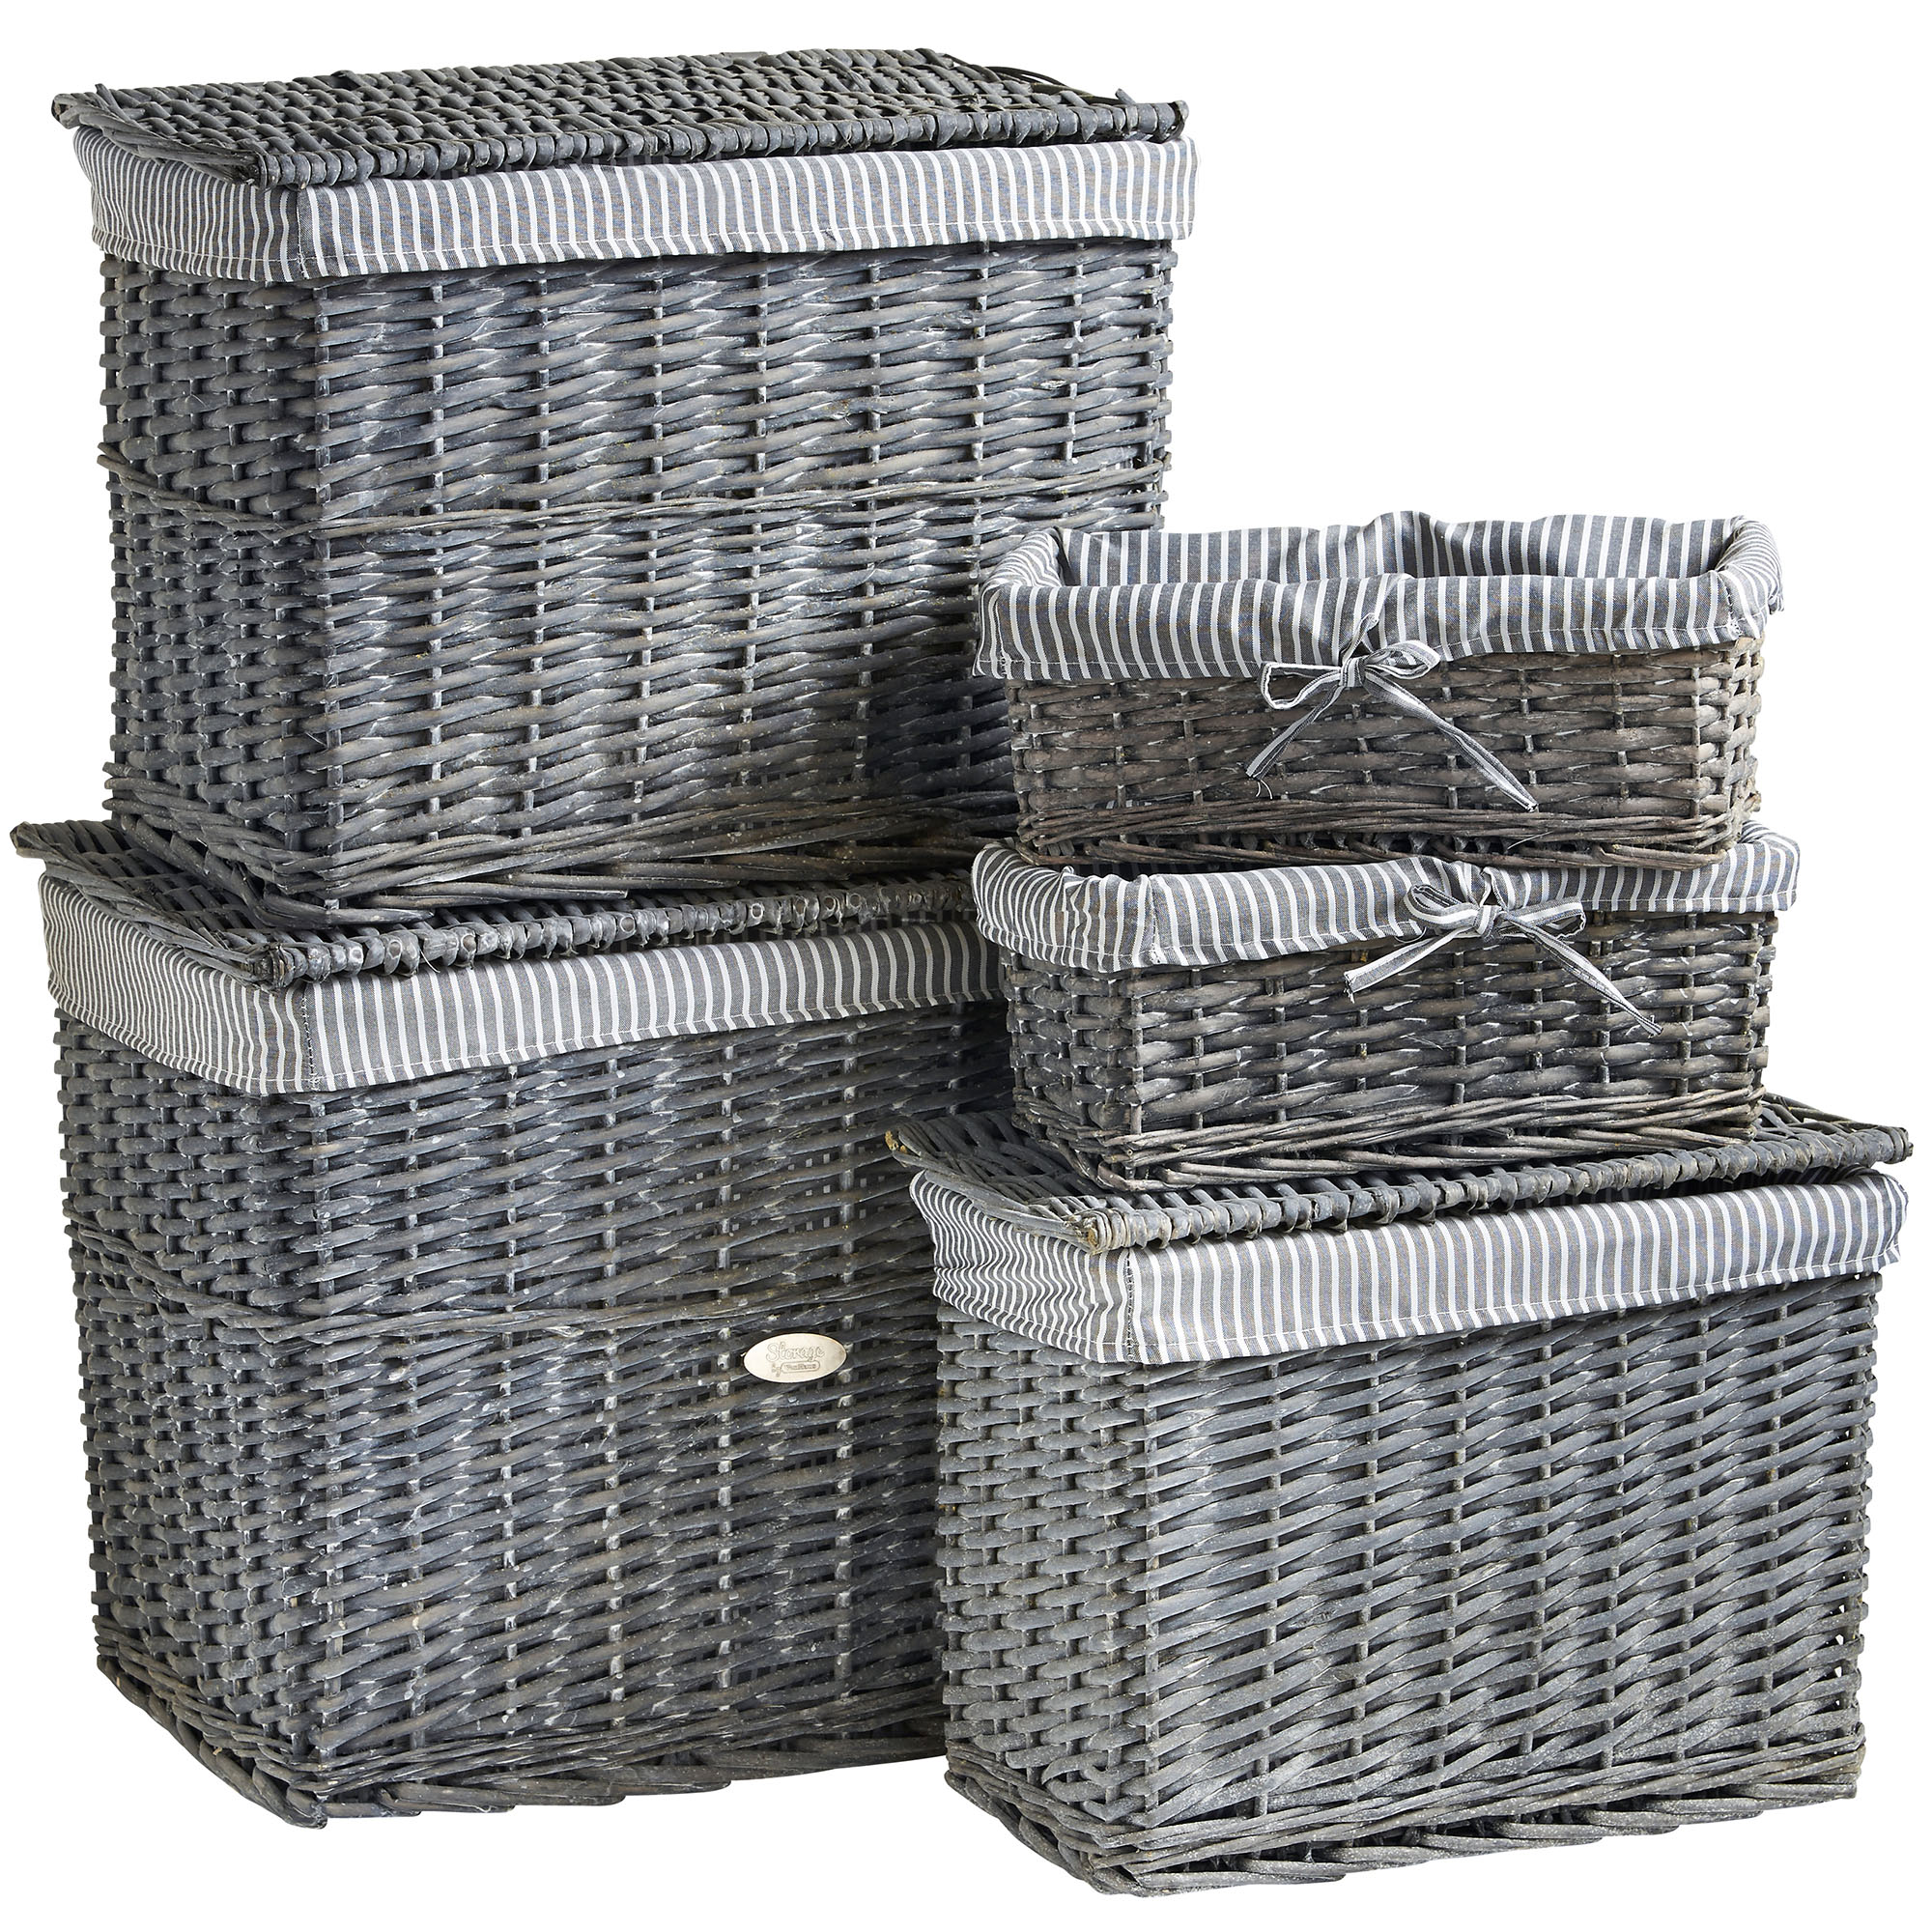 VonHaus 5 Piece Grey Natural Wicker Storage Basket Chest Trunk Hamper